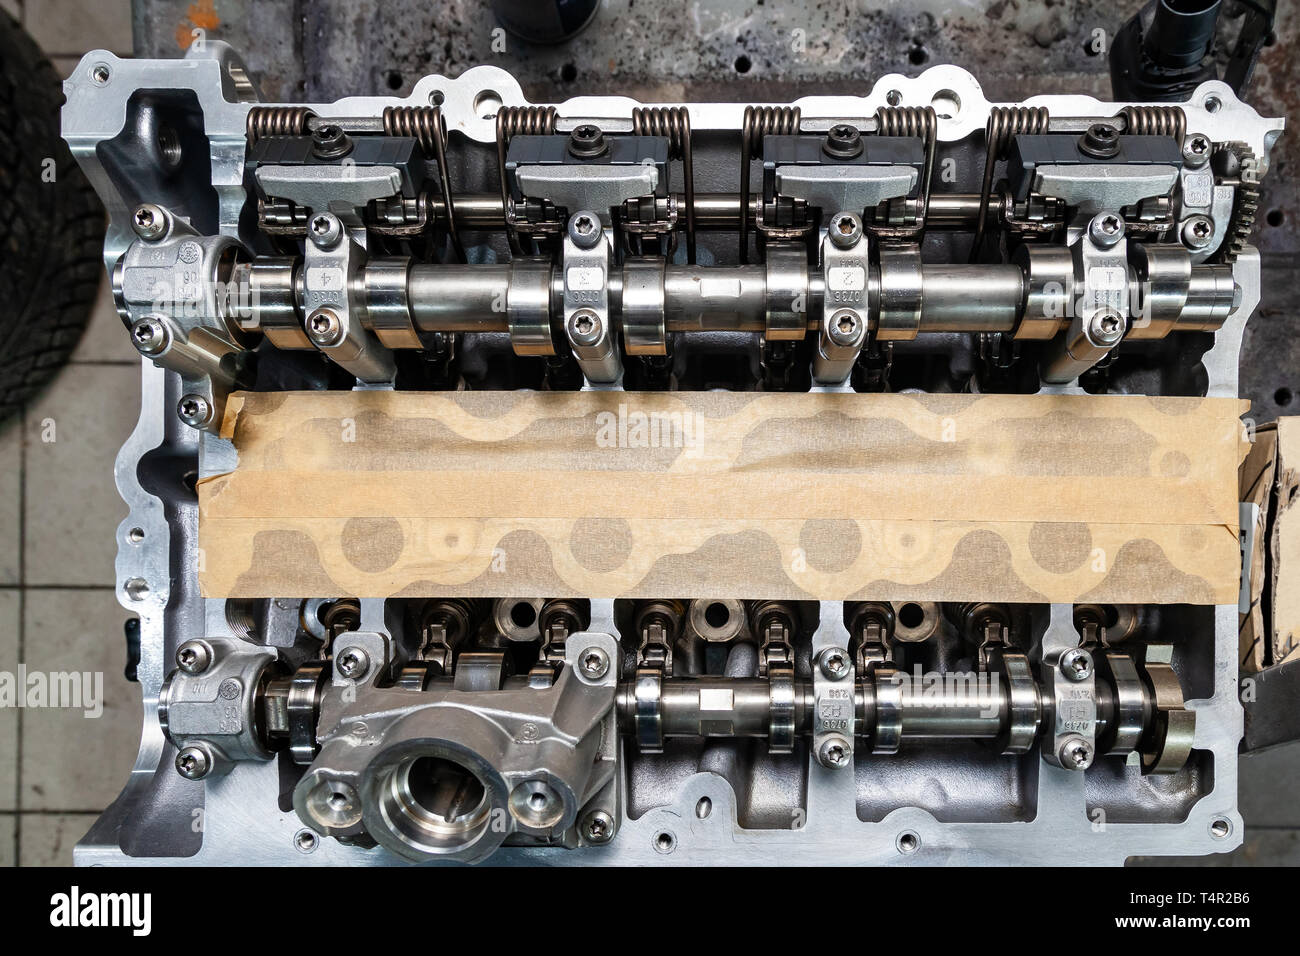 Auto Teile: Motor Zündspule Stockfotografie - Alamy